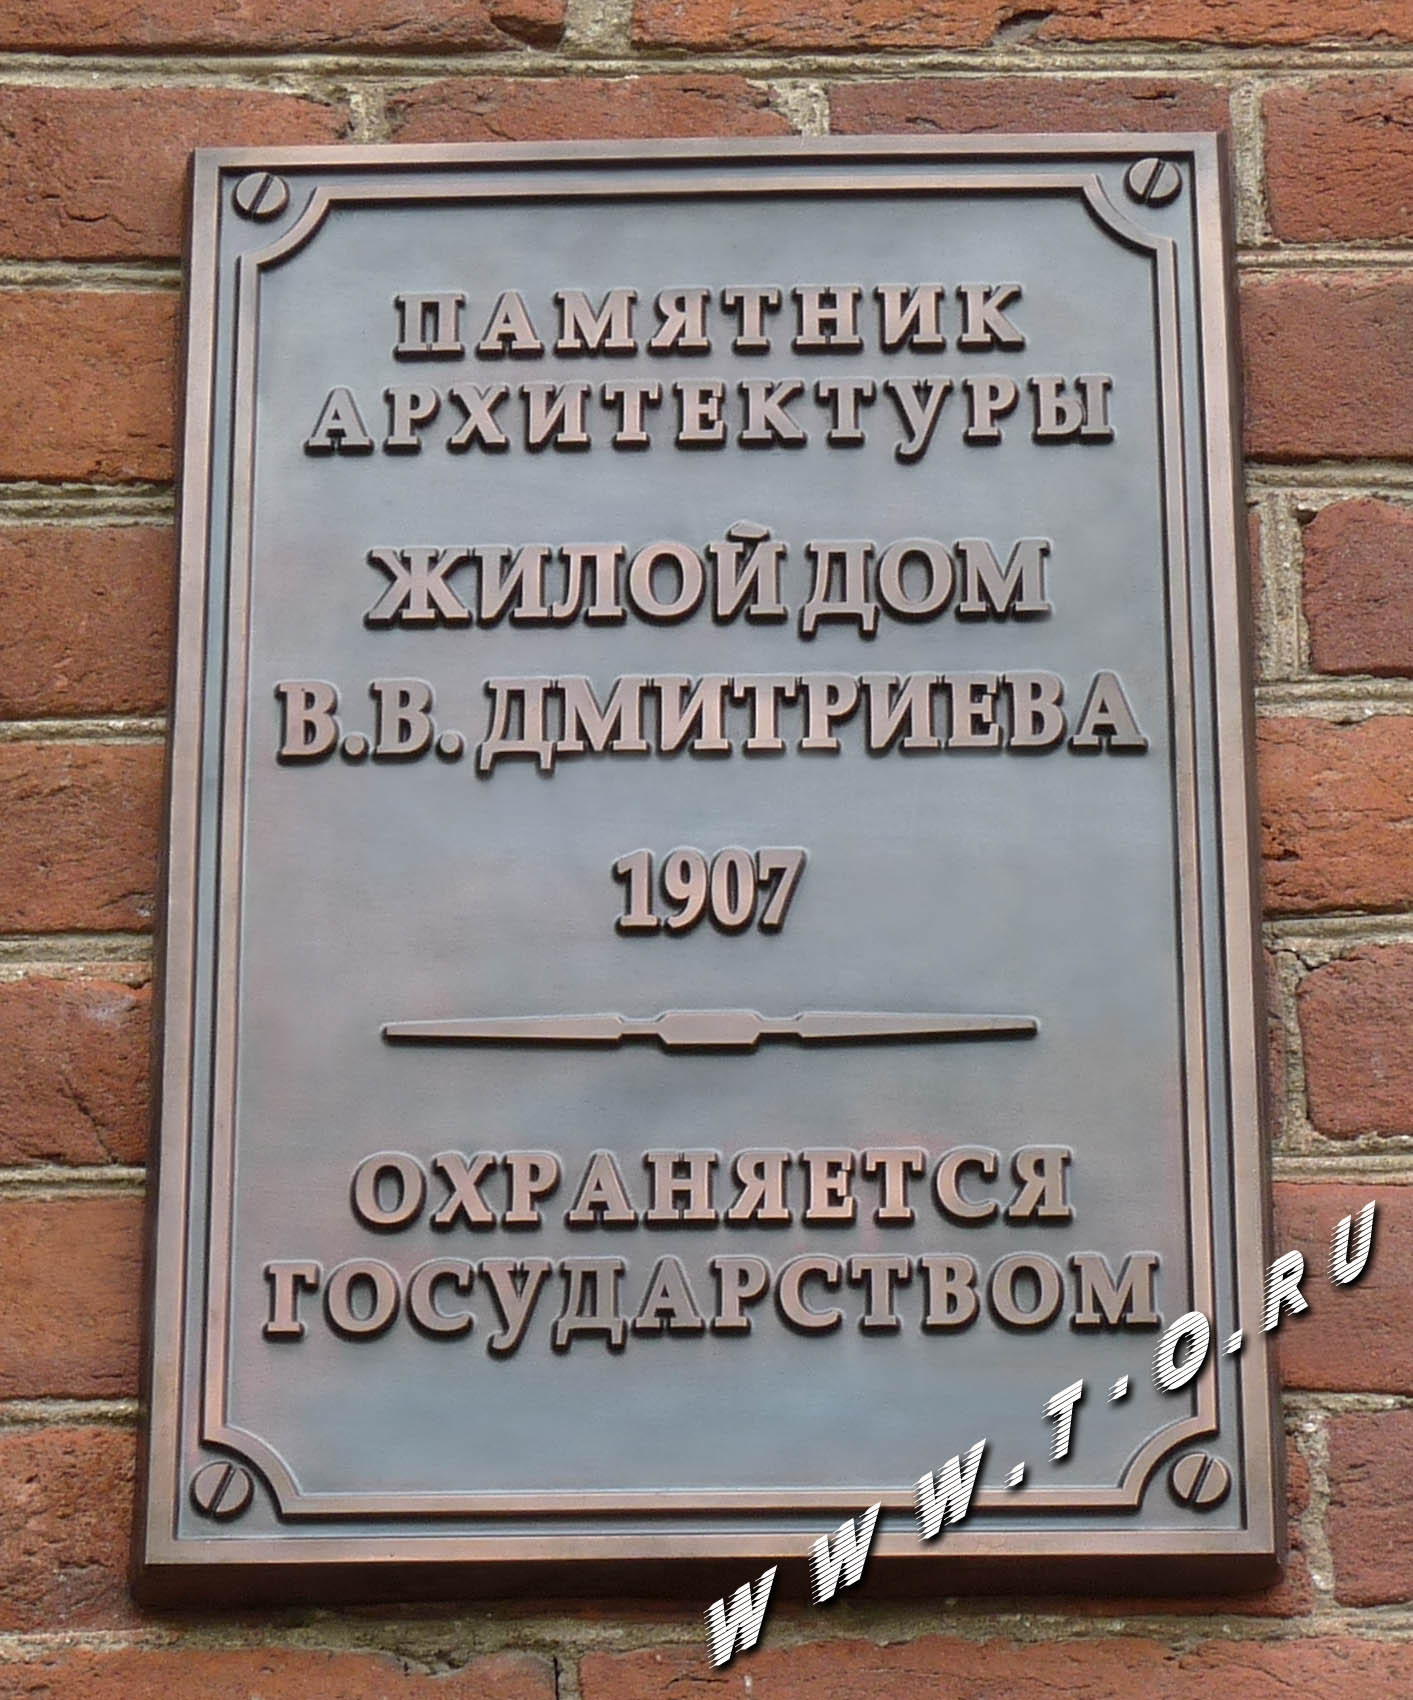 Мемориальная металлическая табличка, охранная памятная доска "Памятник архитектуры". Изготовлена из меди и установлена на на бывшем жилом доме В.В. Дмитриева. Охраняется государством.